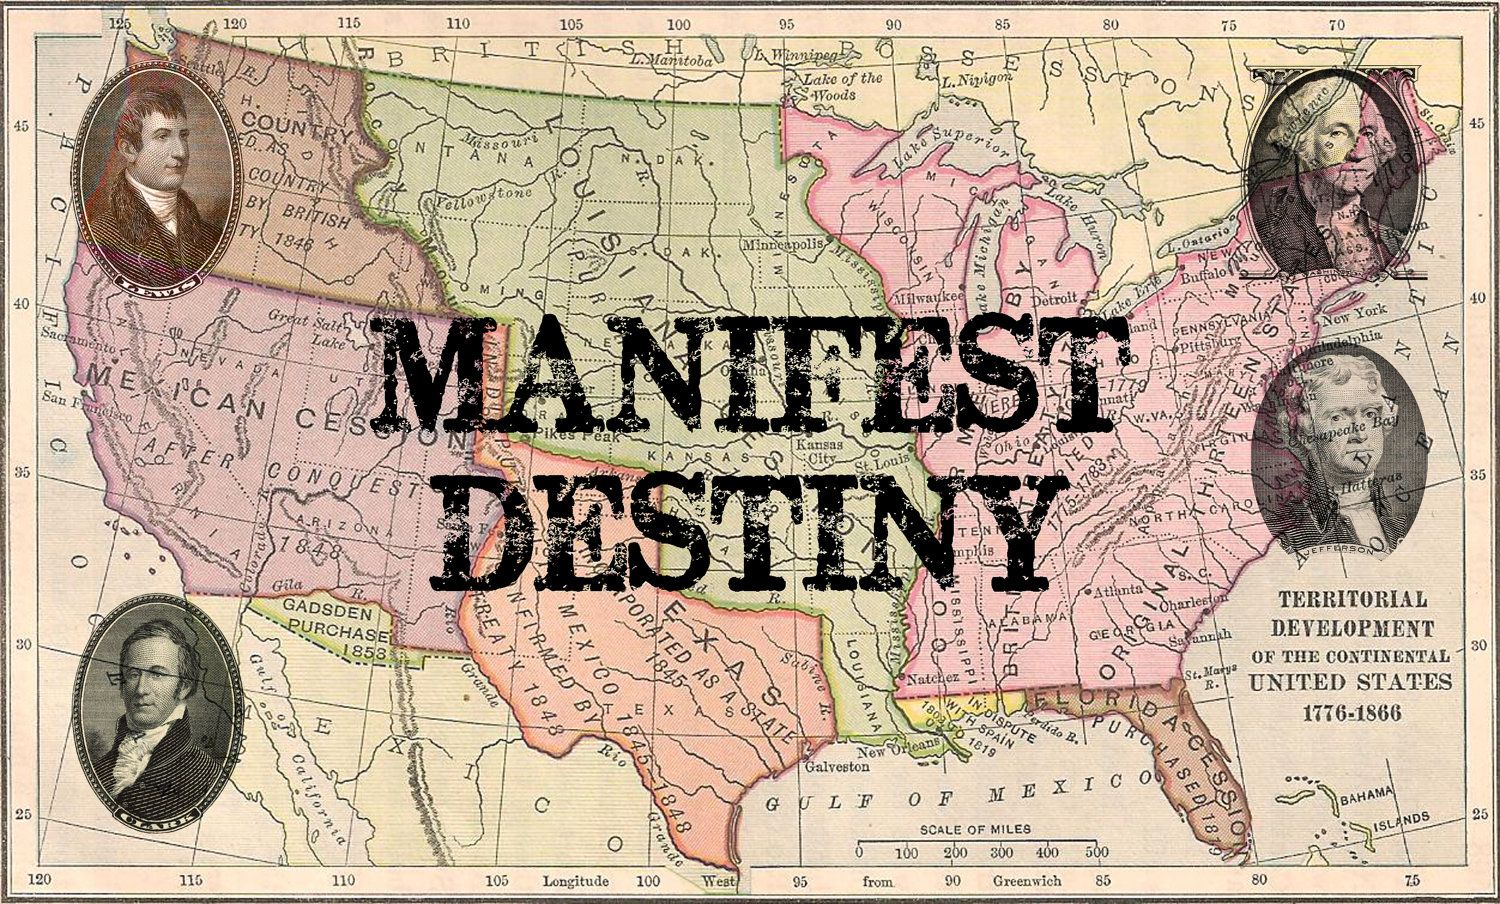 Destiny keffals manifesto